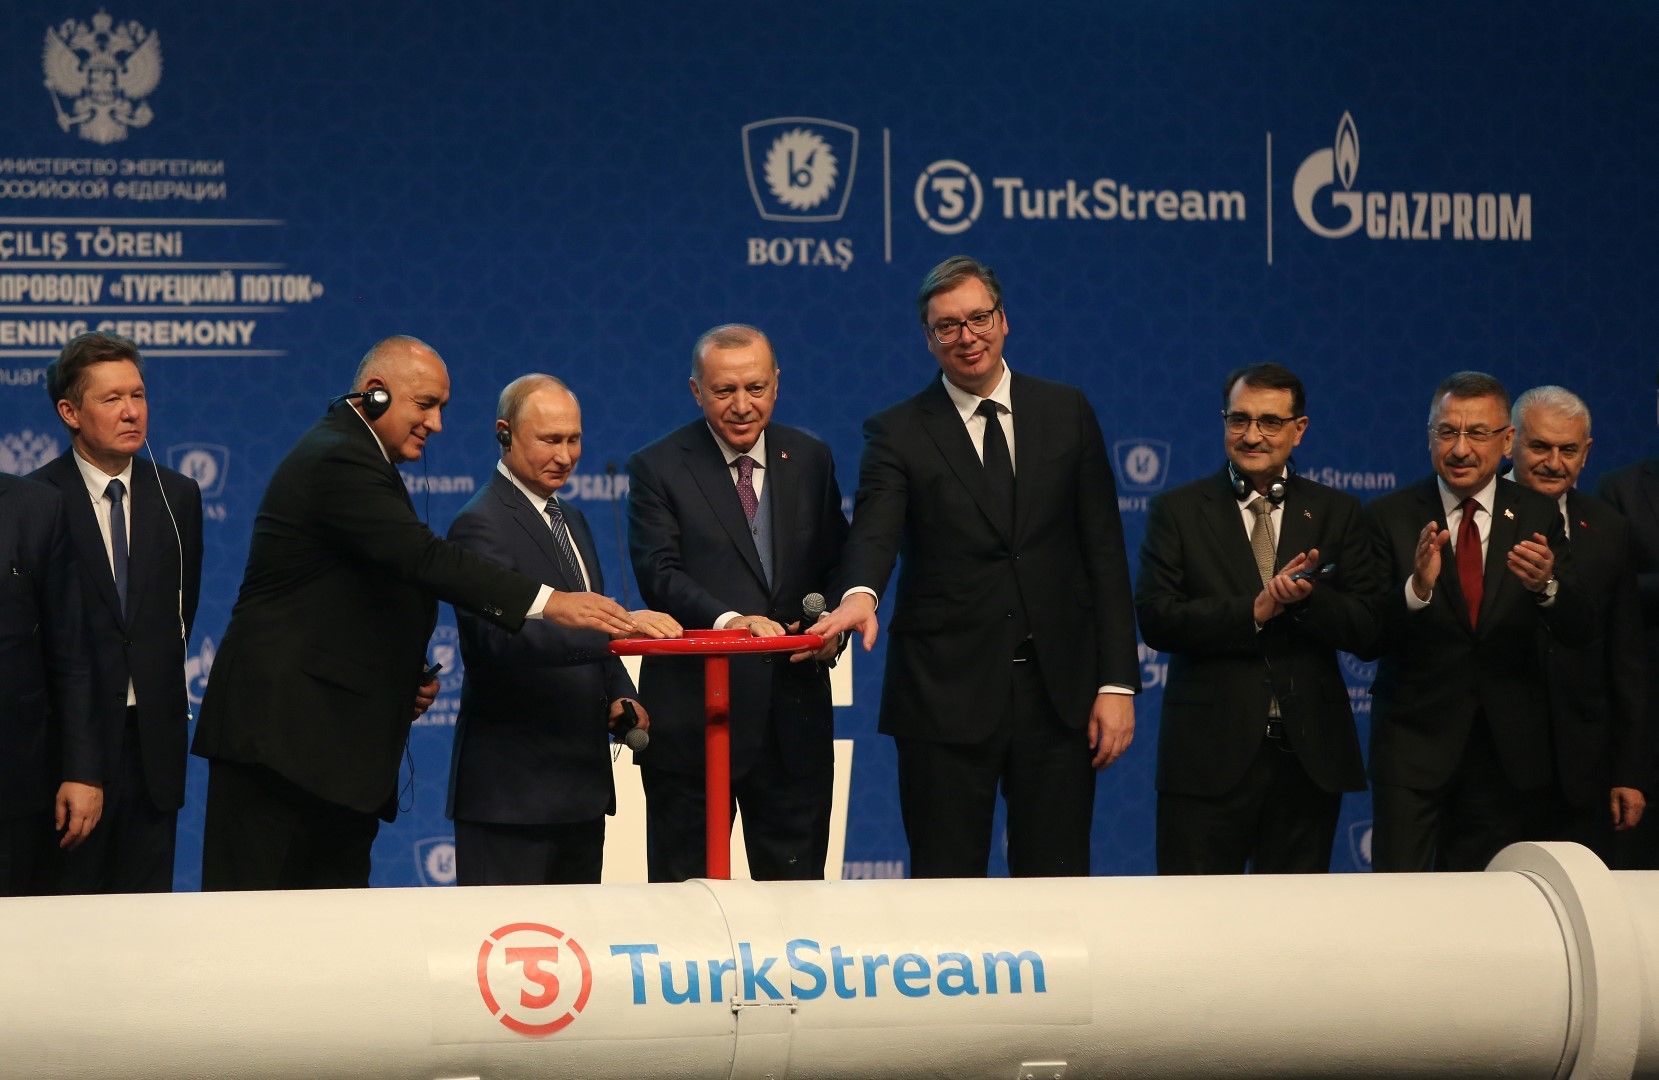 Истанбул, 8 януари 2020 г., тържествена церемония по откриването на газопровода "Турски поток”, в която участват министър-председателят Бойко Борисов, президентите на Турция Реджеп Тайип Ердоган, Русия Владимир Путин и Сърбия Александър Вучич